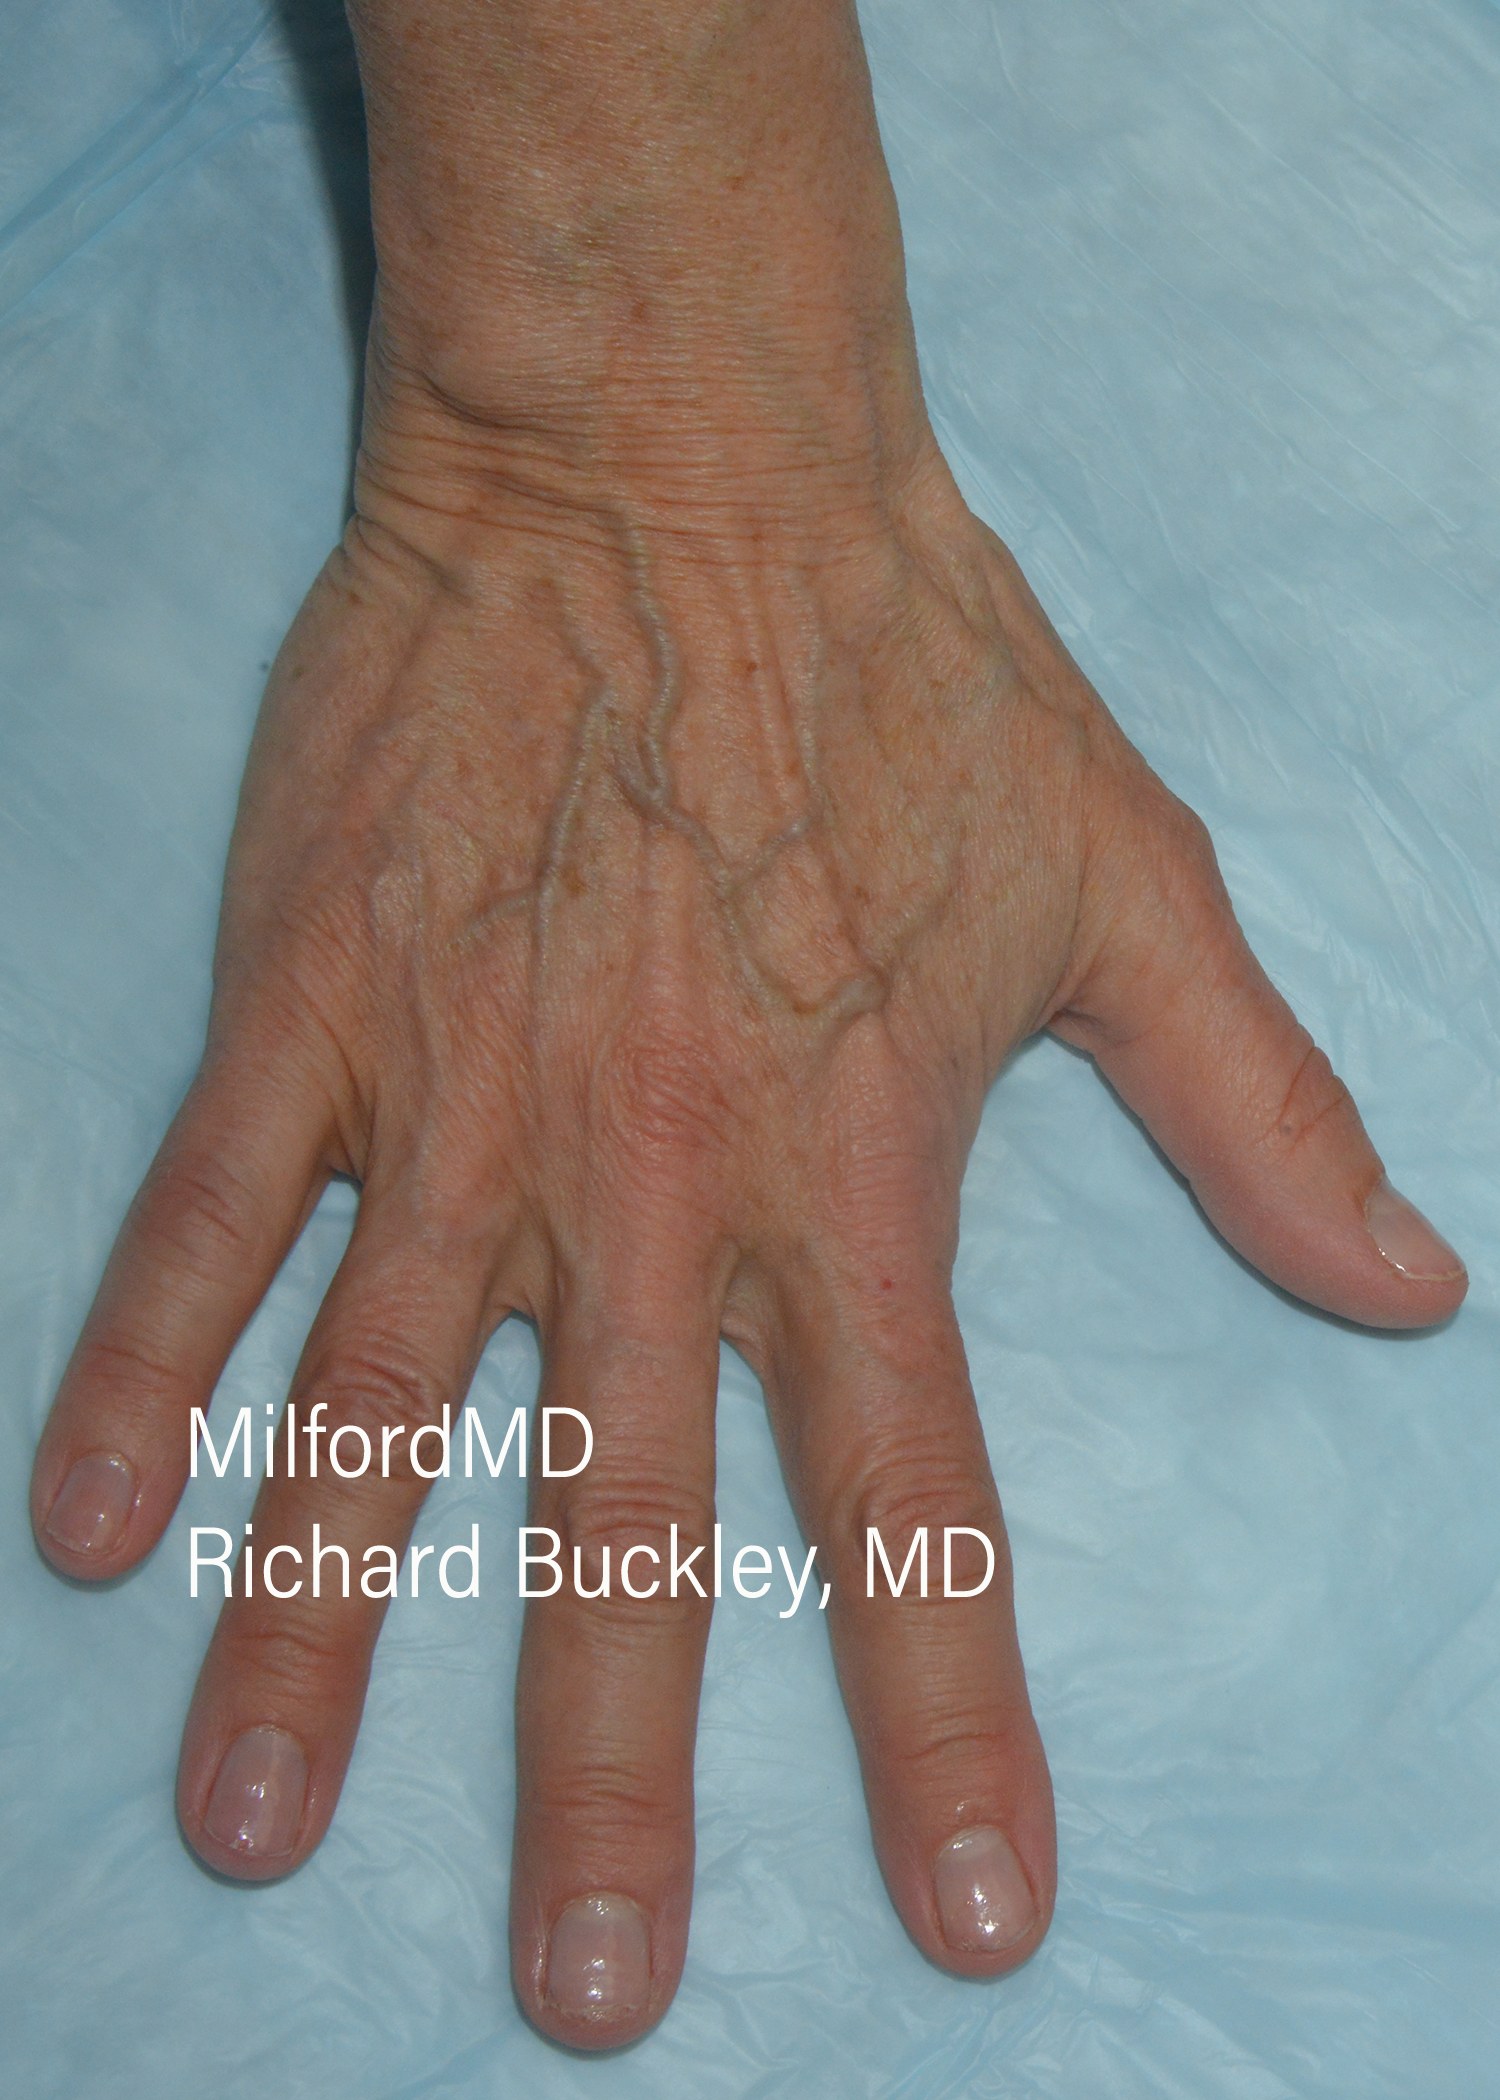 Hand Rejuvenation Procedures Before & After Photos,Hand Rejuvenation Procedures near me,MilfordMD Cosmetic Dermatology, Hand Rejuvenation Procedures